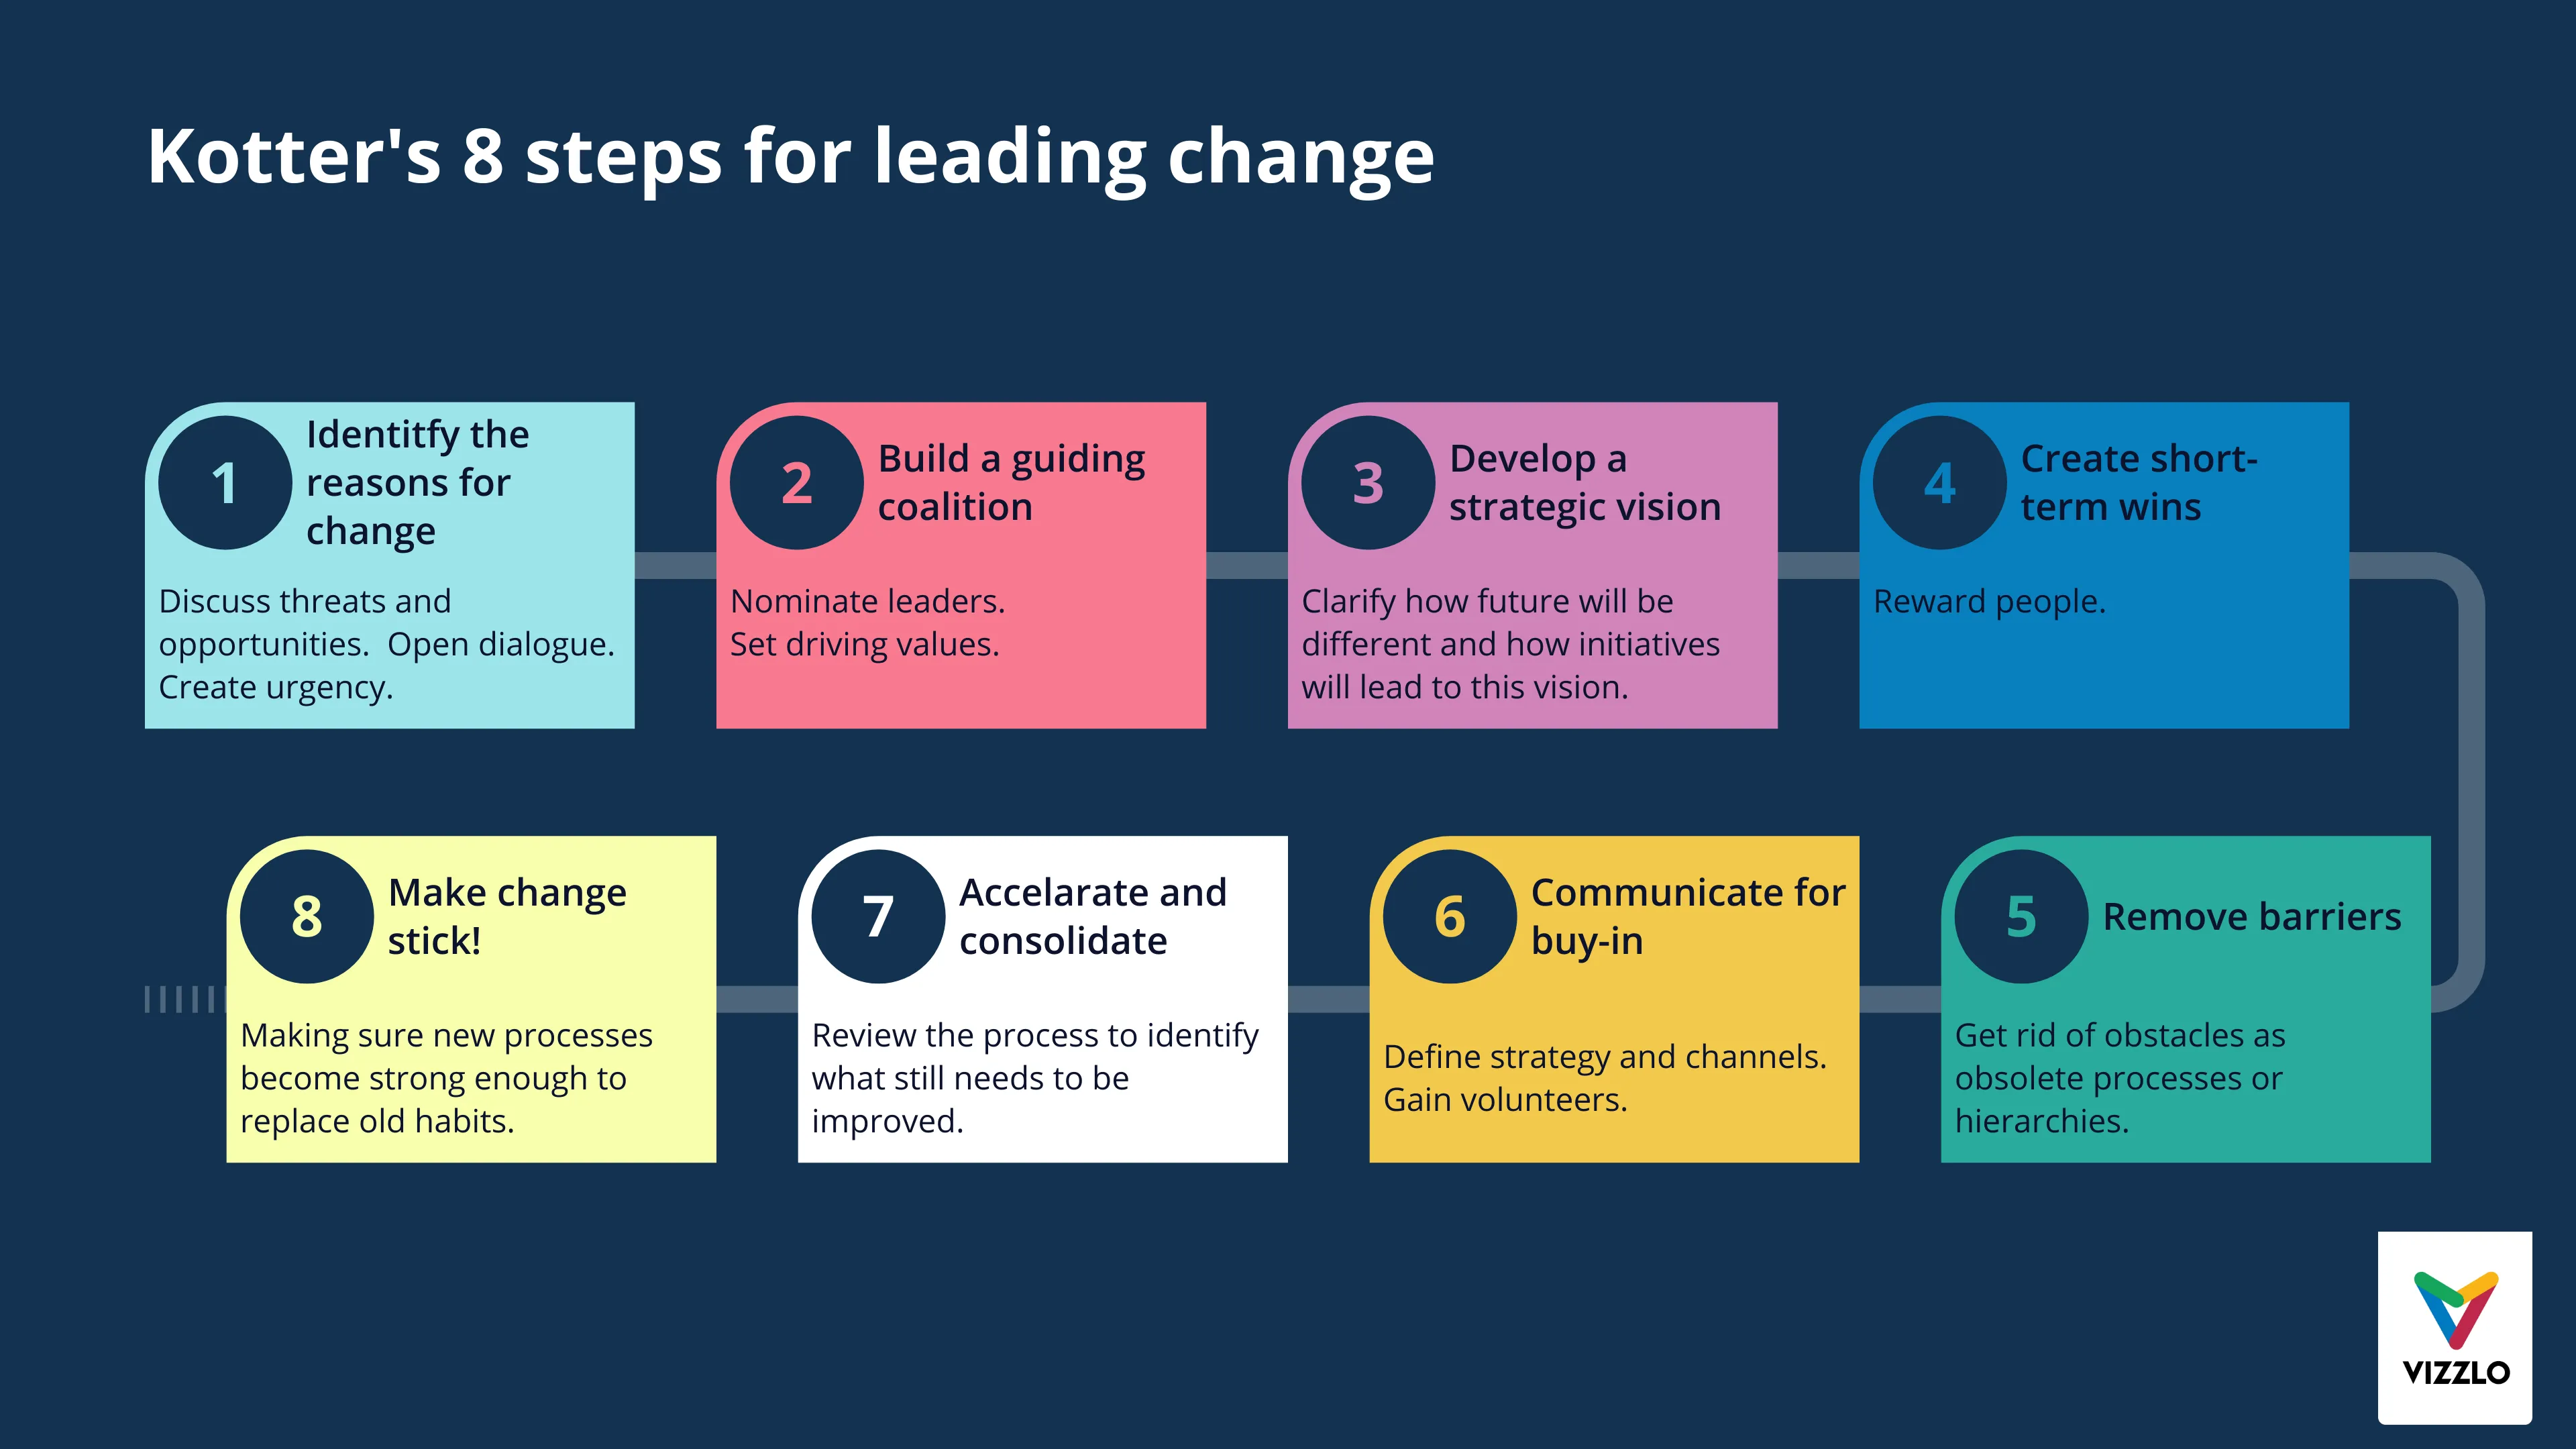 Kotter's 8 steps for leading change